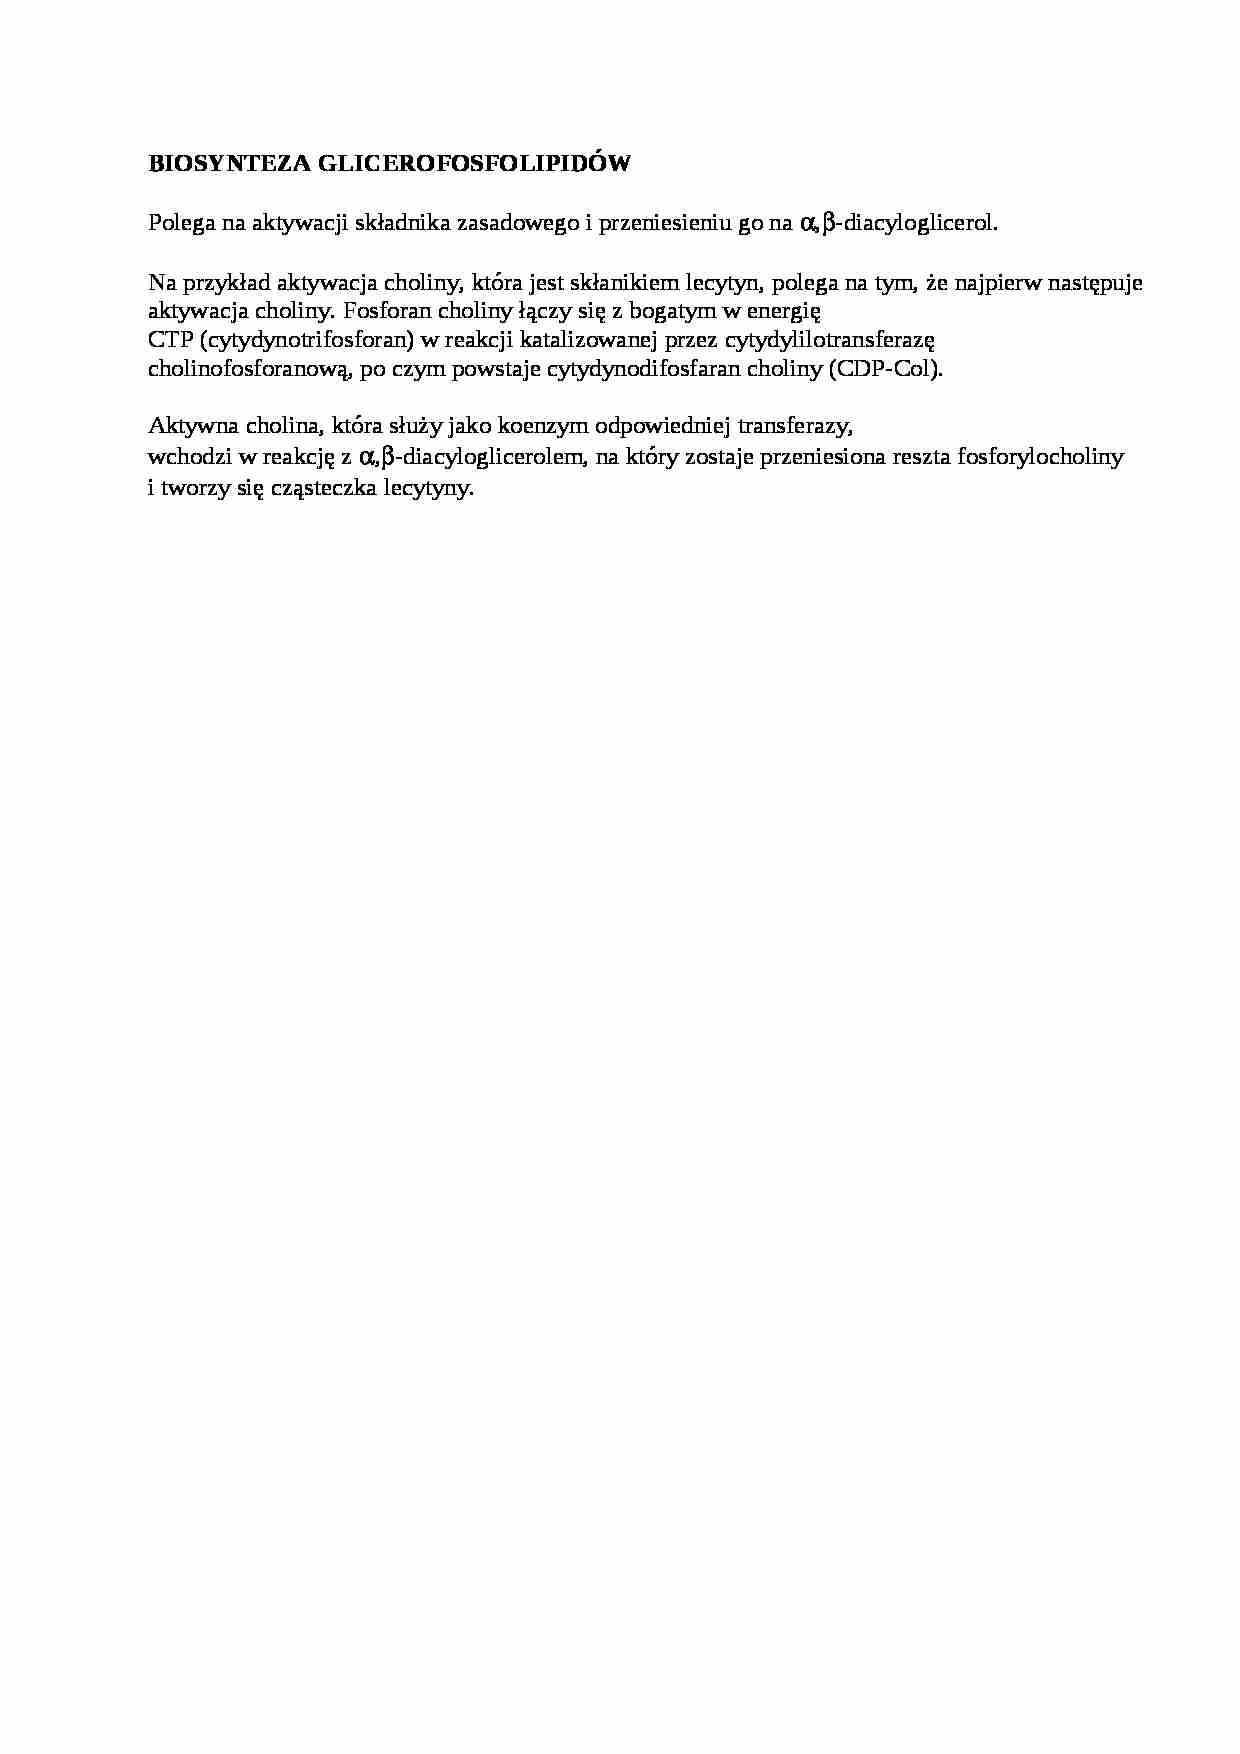 Biosynteza glicerofosfolipidów - opracowanie - strona 1